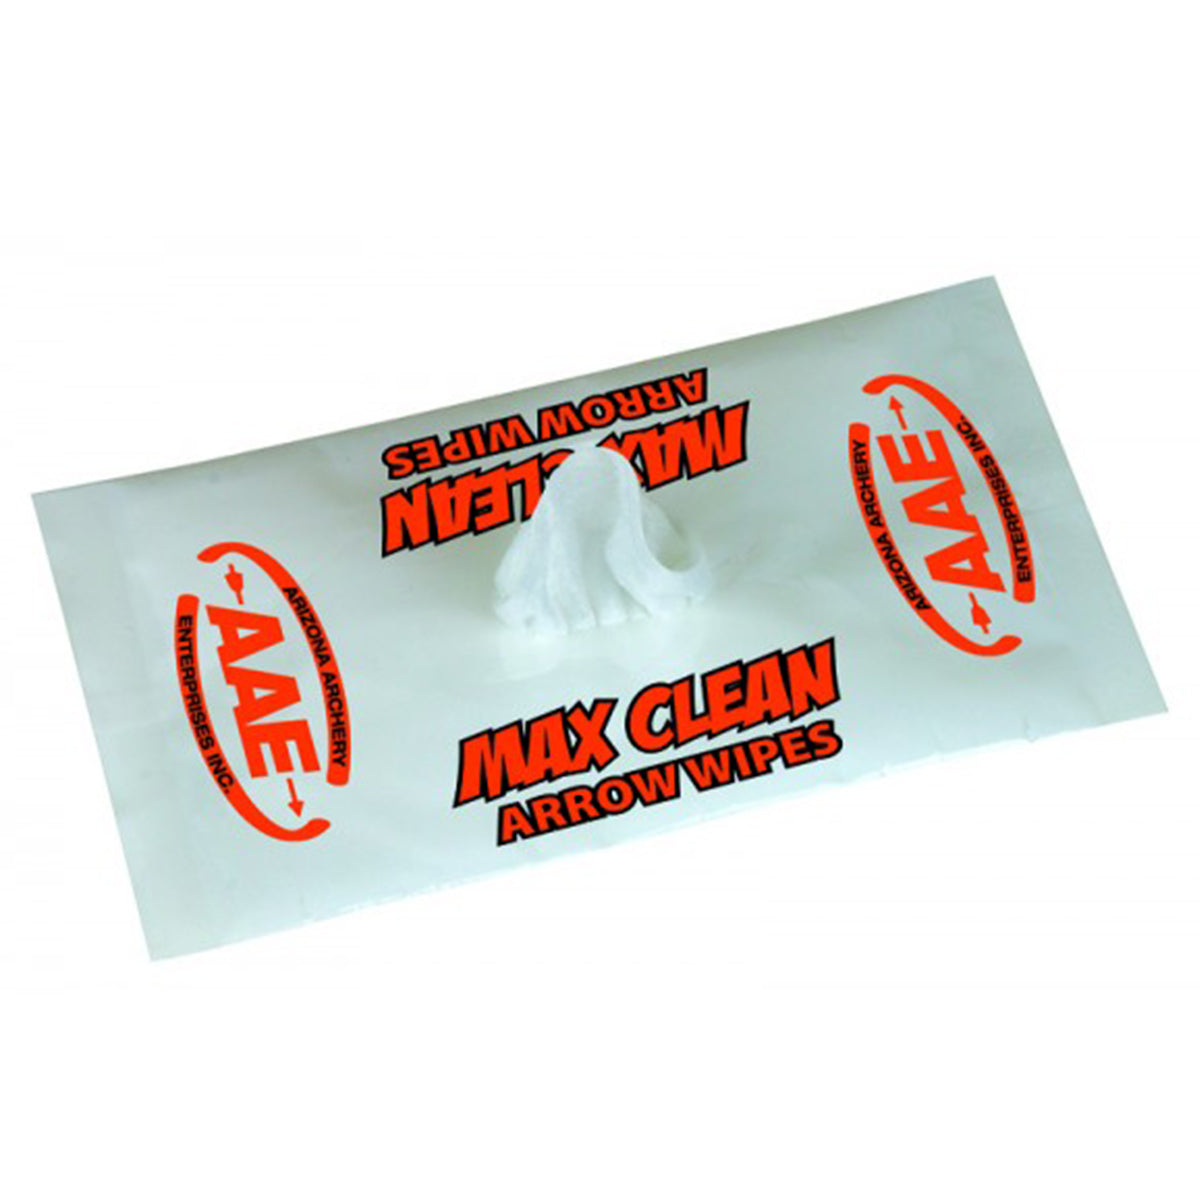 AAE Max Clean Arrow Wipes in AAE Max Clean Arrow Wipes by AAE | Archery - goHUNT Shop by GOHUNT | AAE - GOHUNT Shop